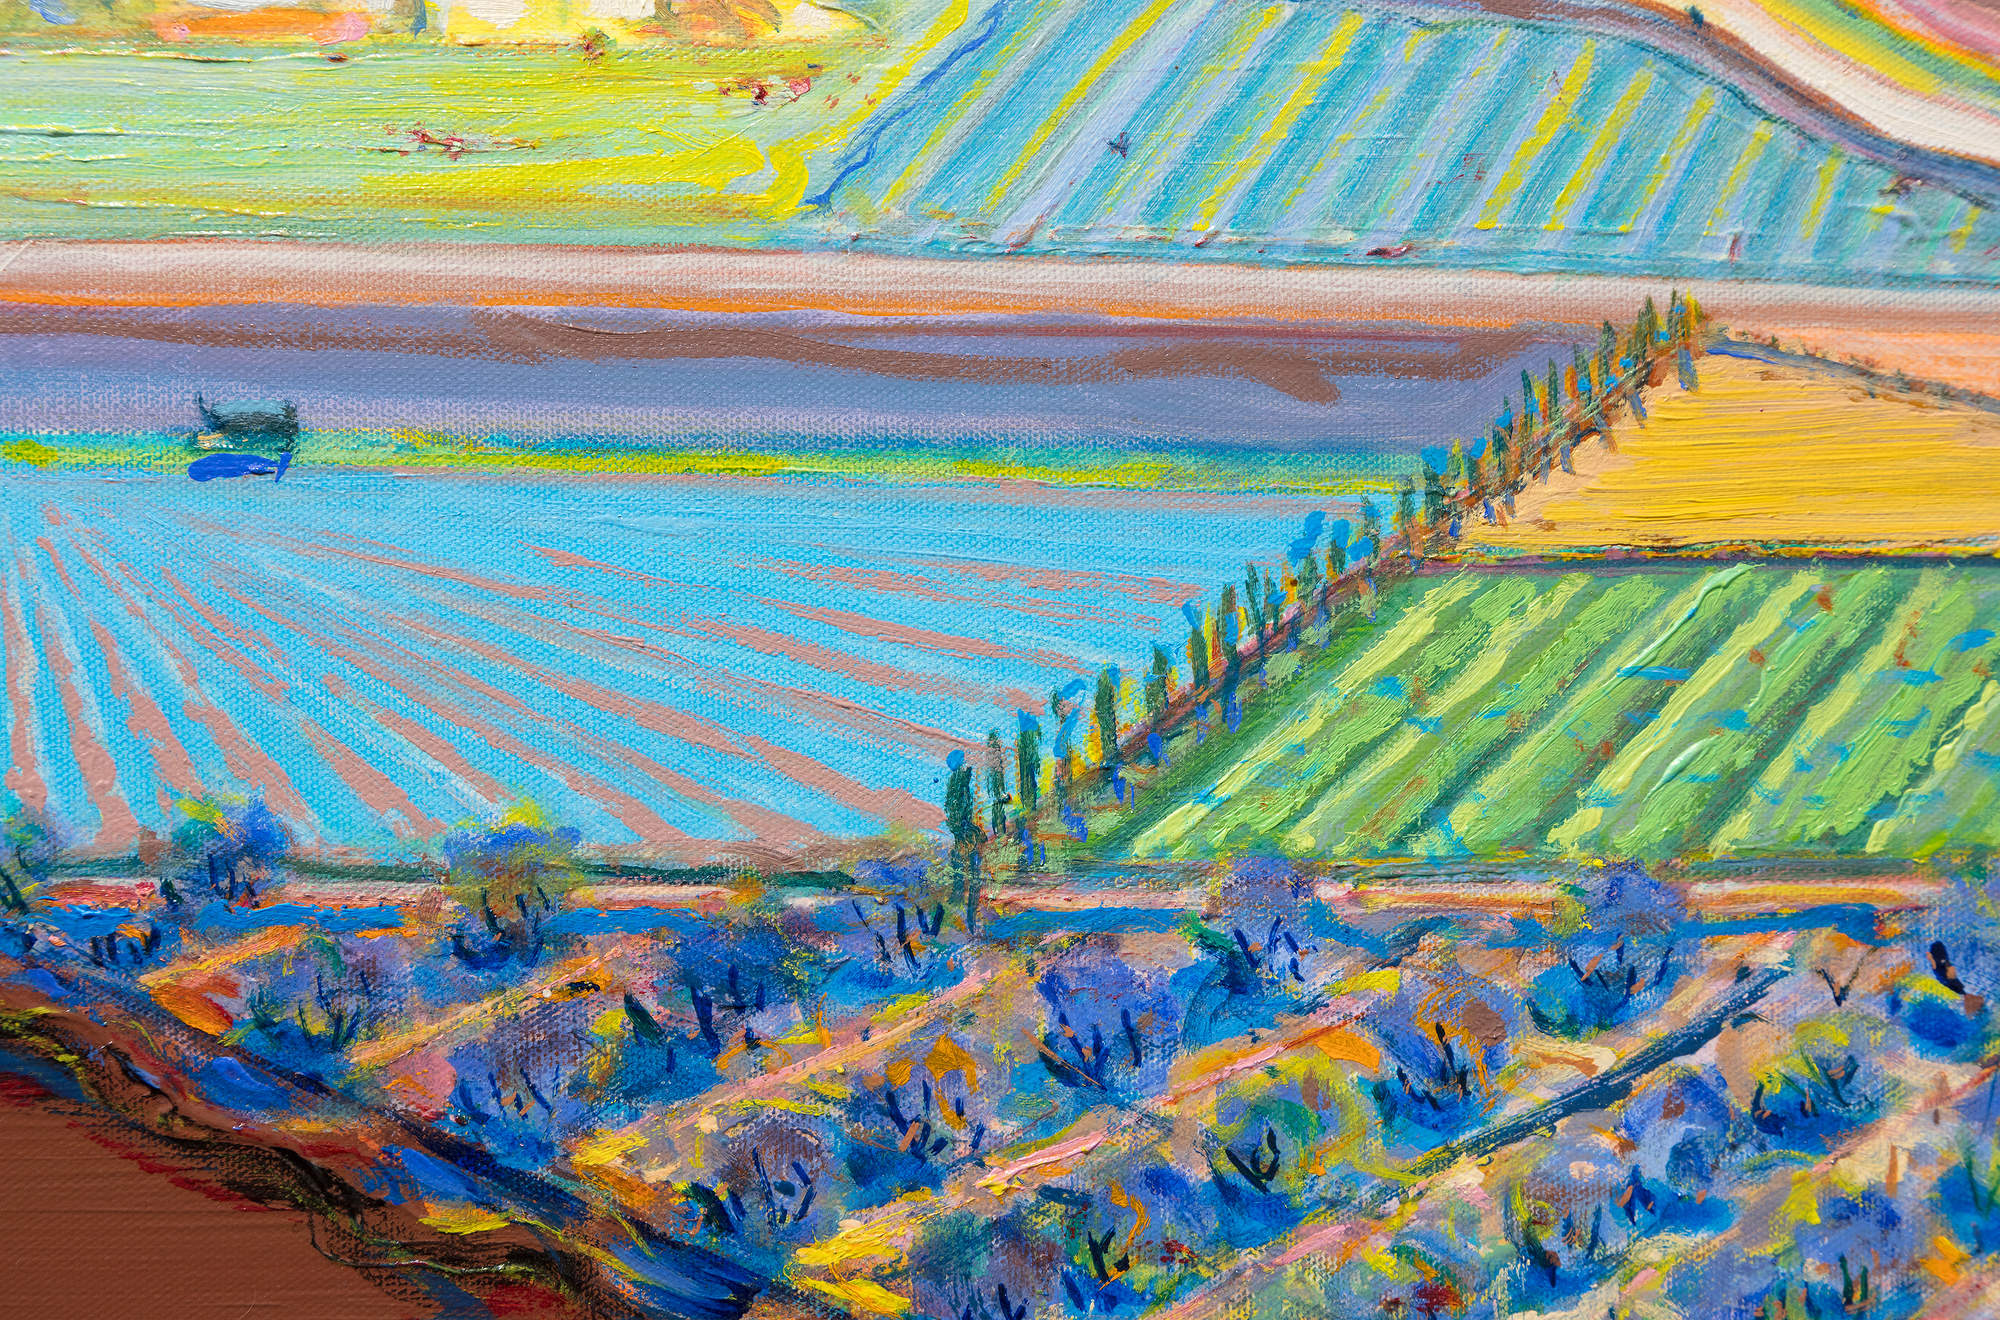 WAYNE THIEBAUD - The Riverhouse - óleo sobre lienzo - 18 x 35 3/4 in.